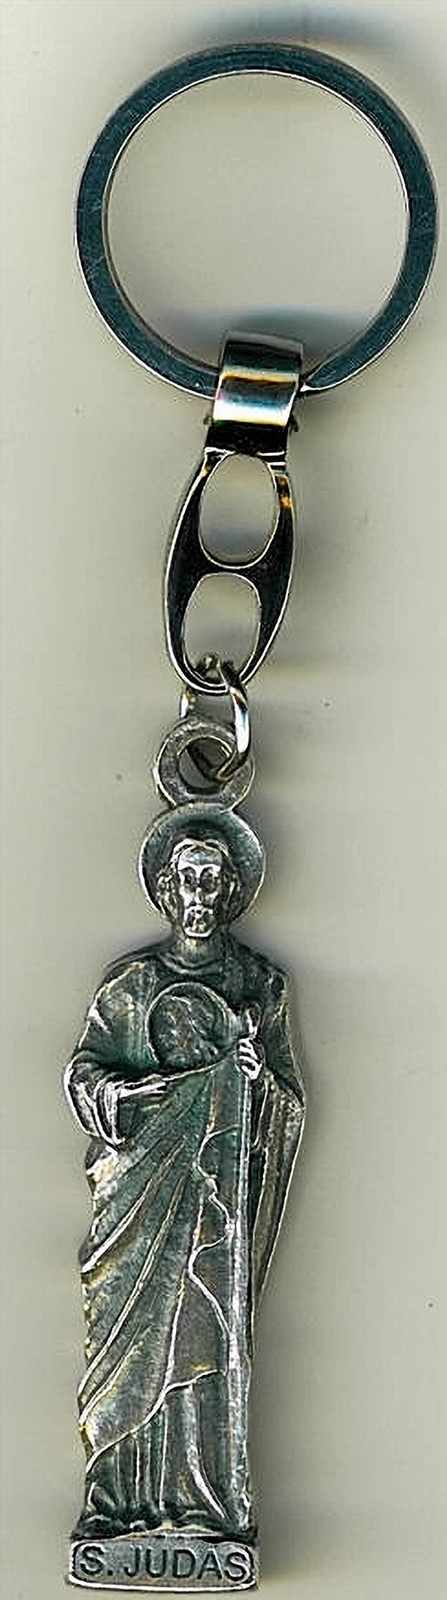 Key ring   s. judas statue 105.0138 001